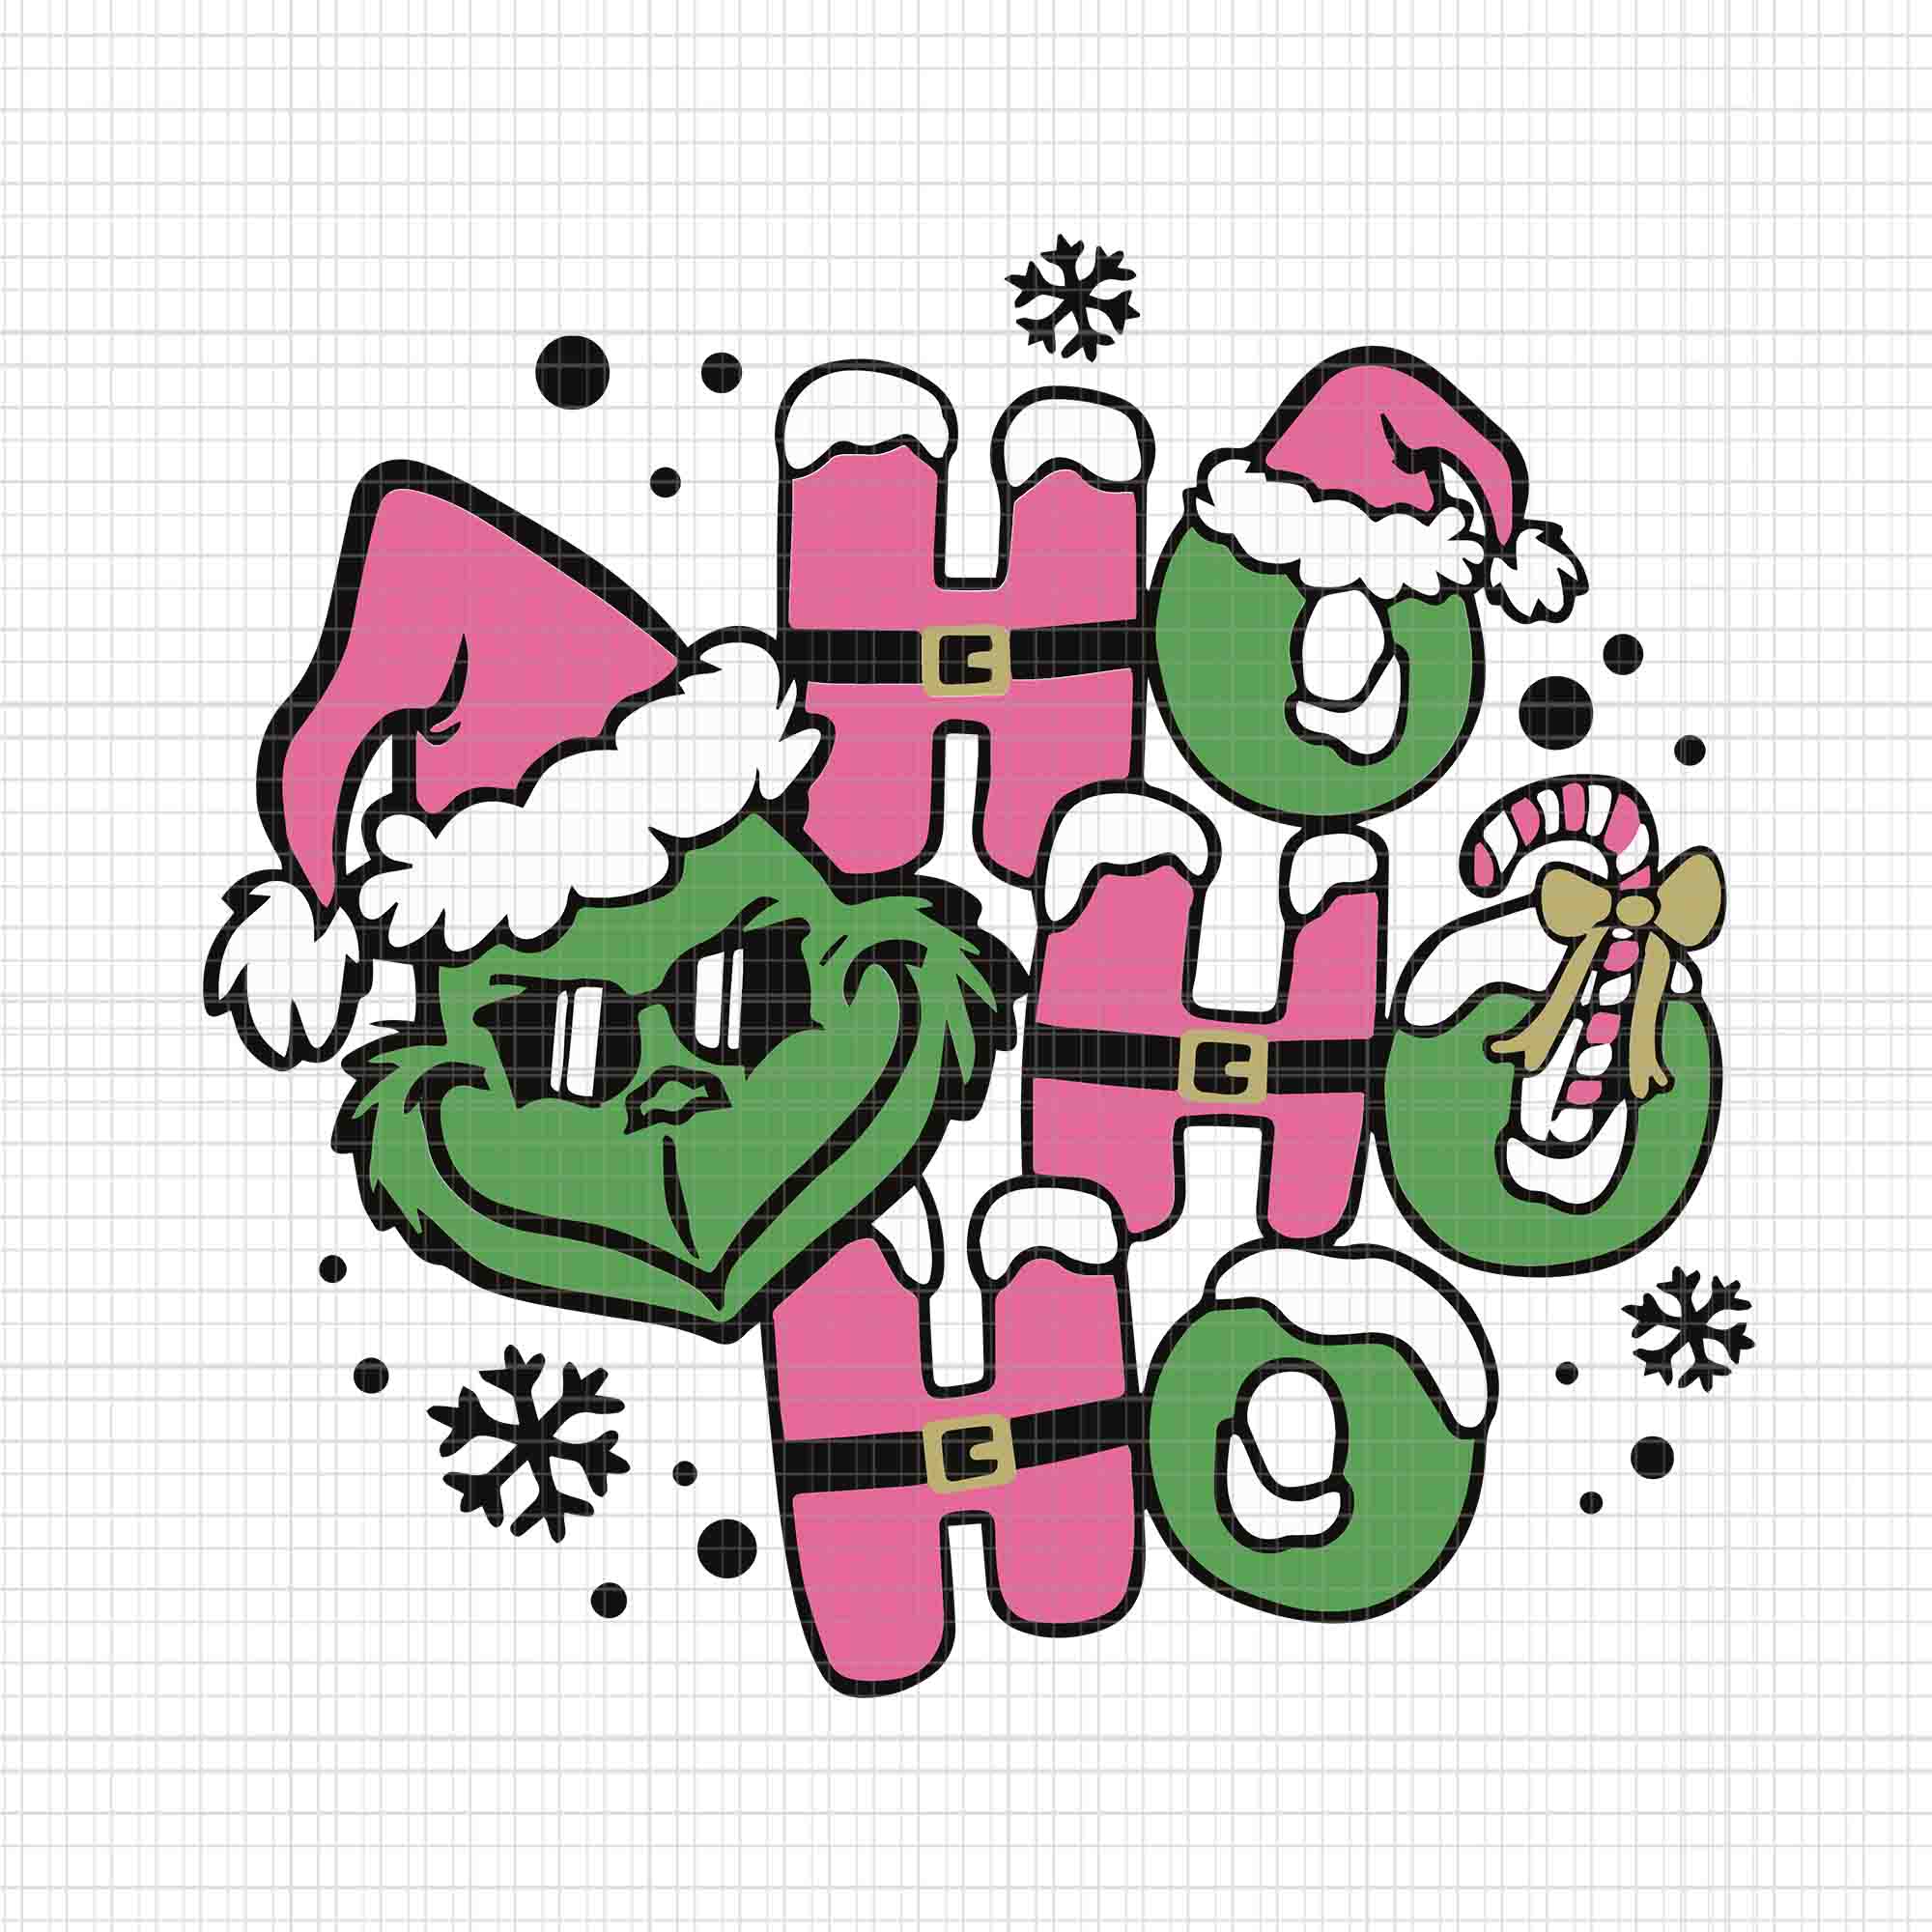 Ho Ho Ho Grinch Santa Christmas PNG, Grinch Christmas PNG, Christmas P